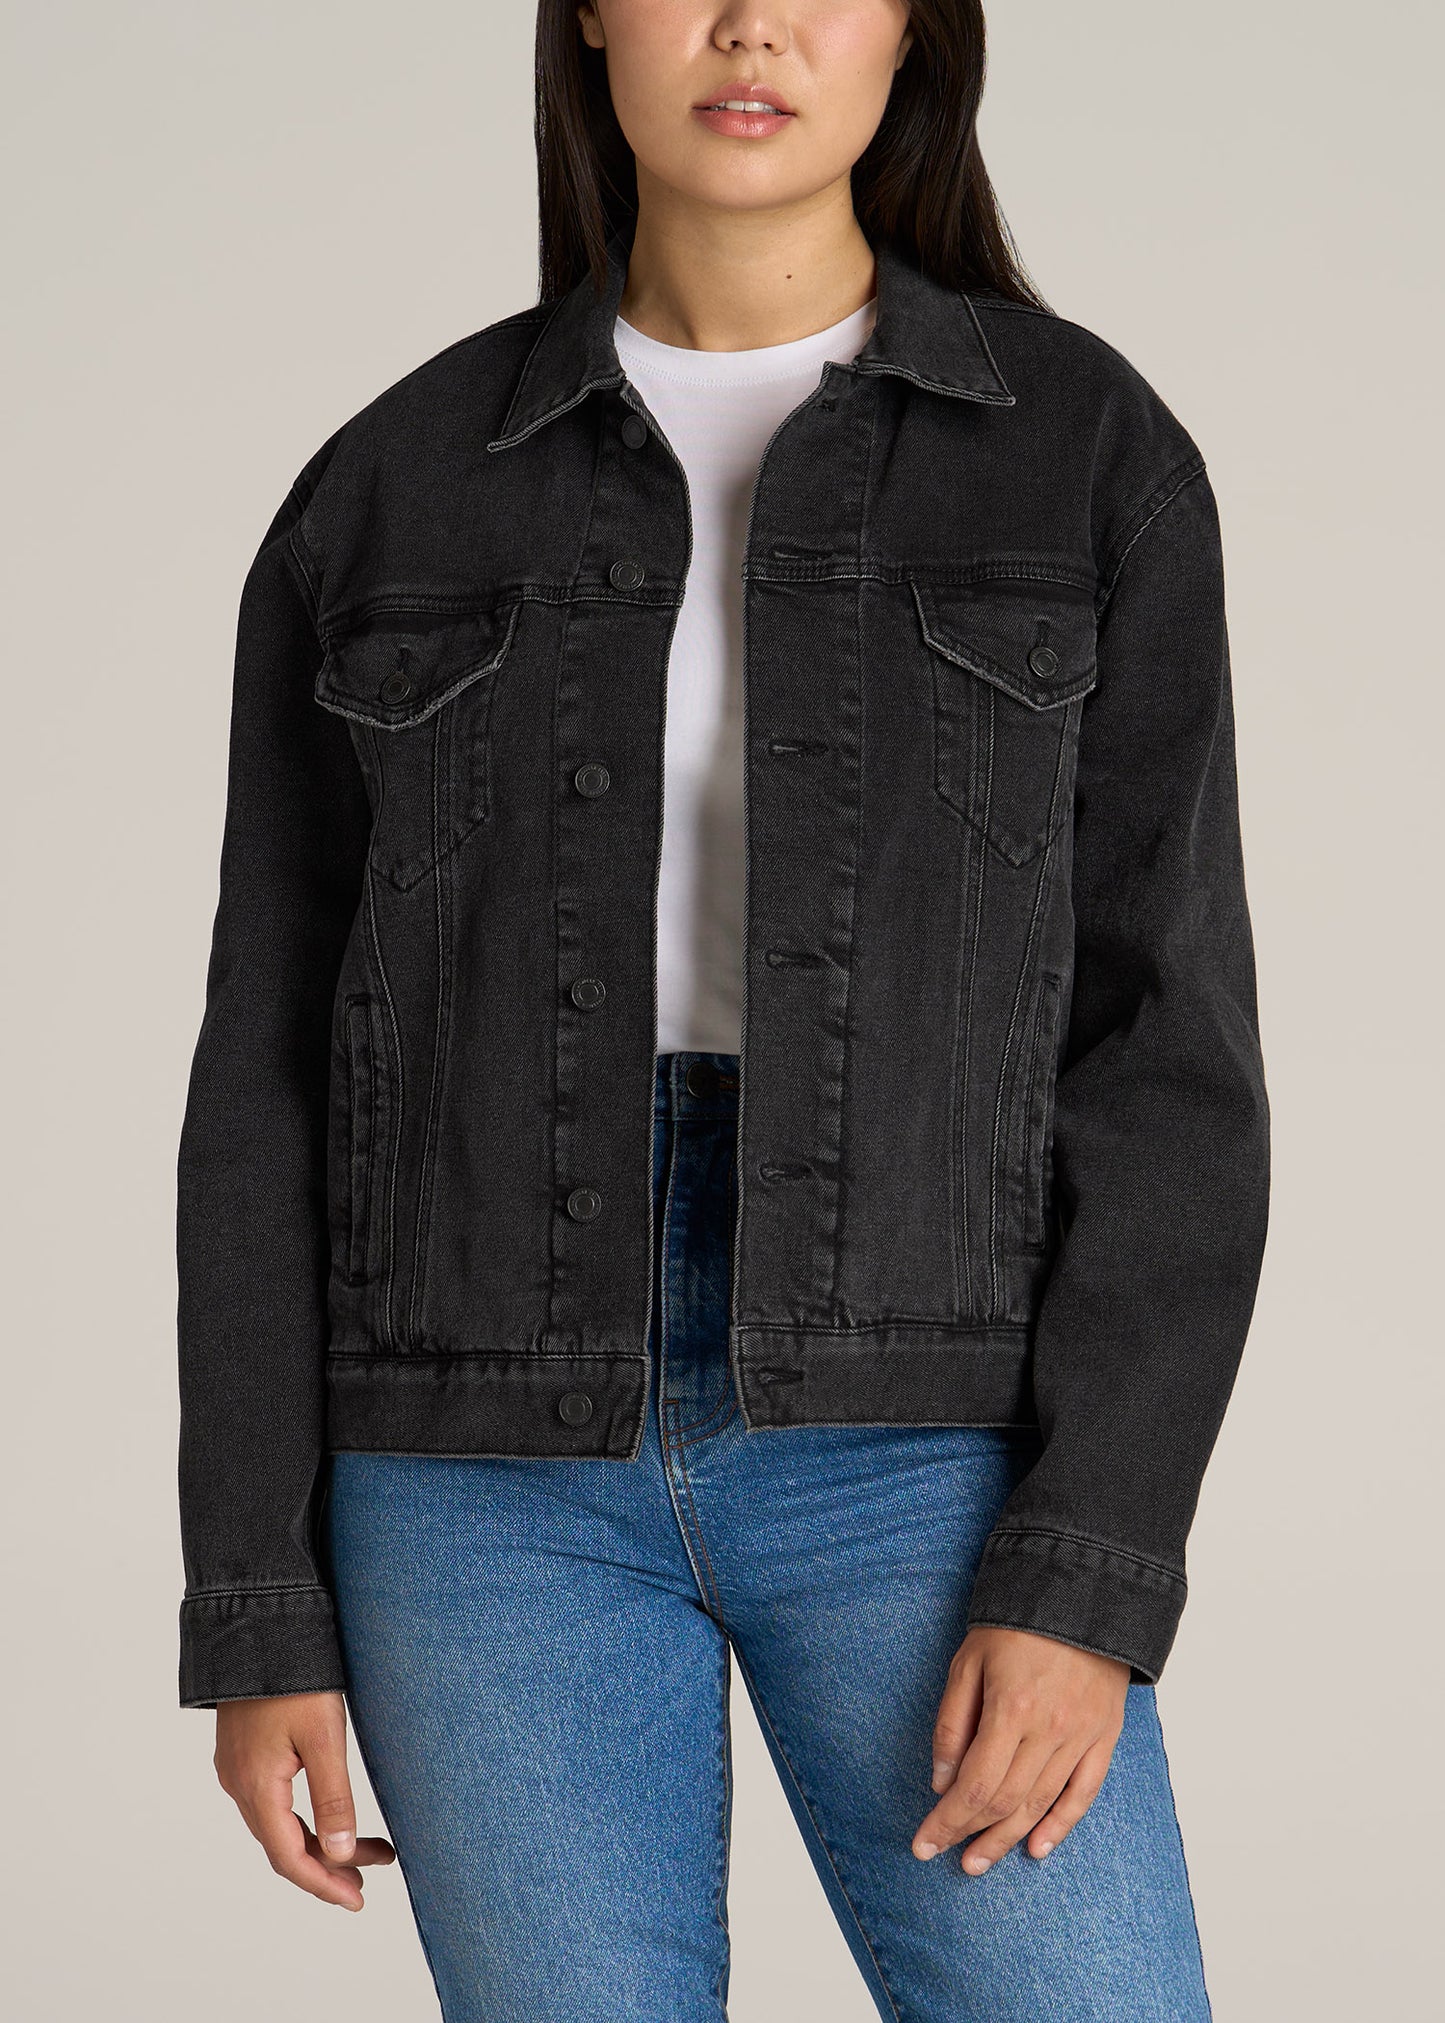 Jean Jackets - Shop Women's Denim Jackets | Lulus